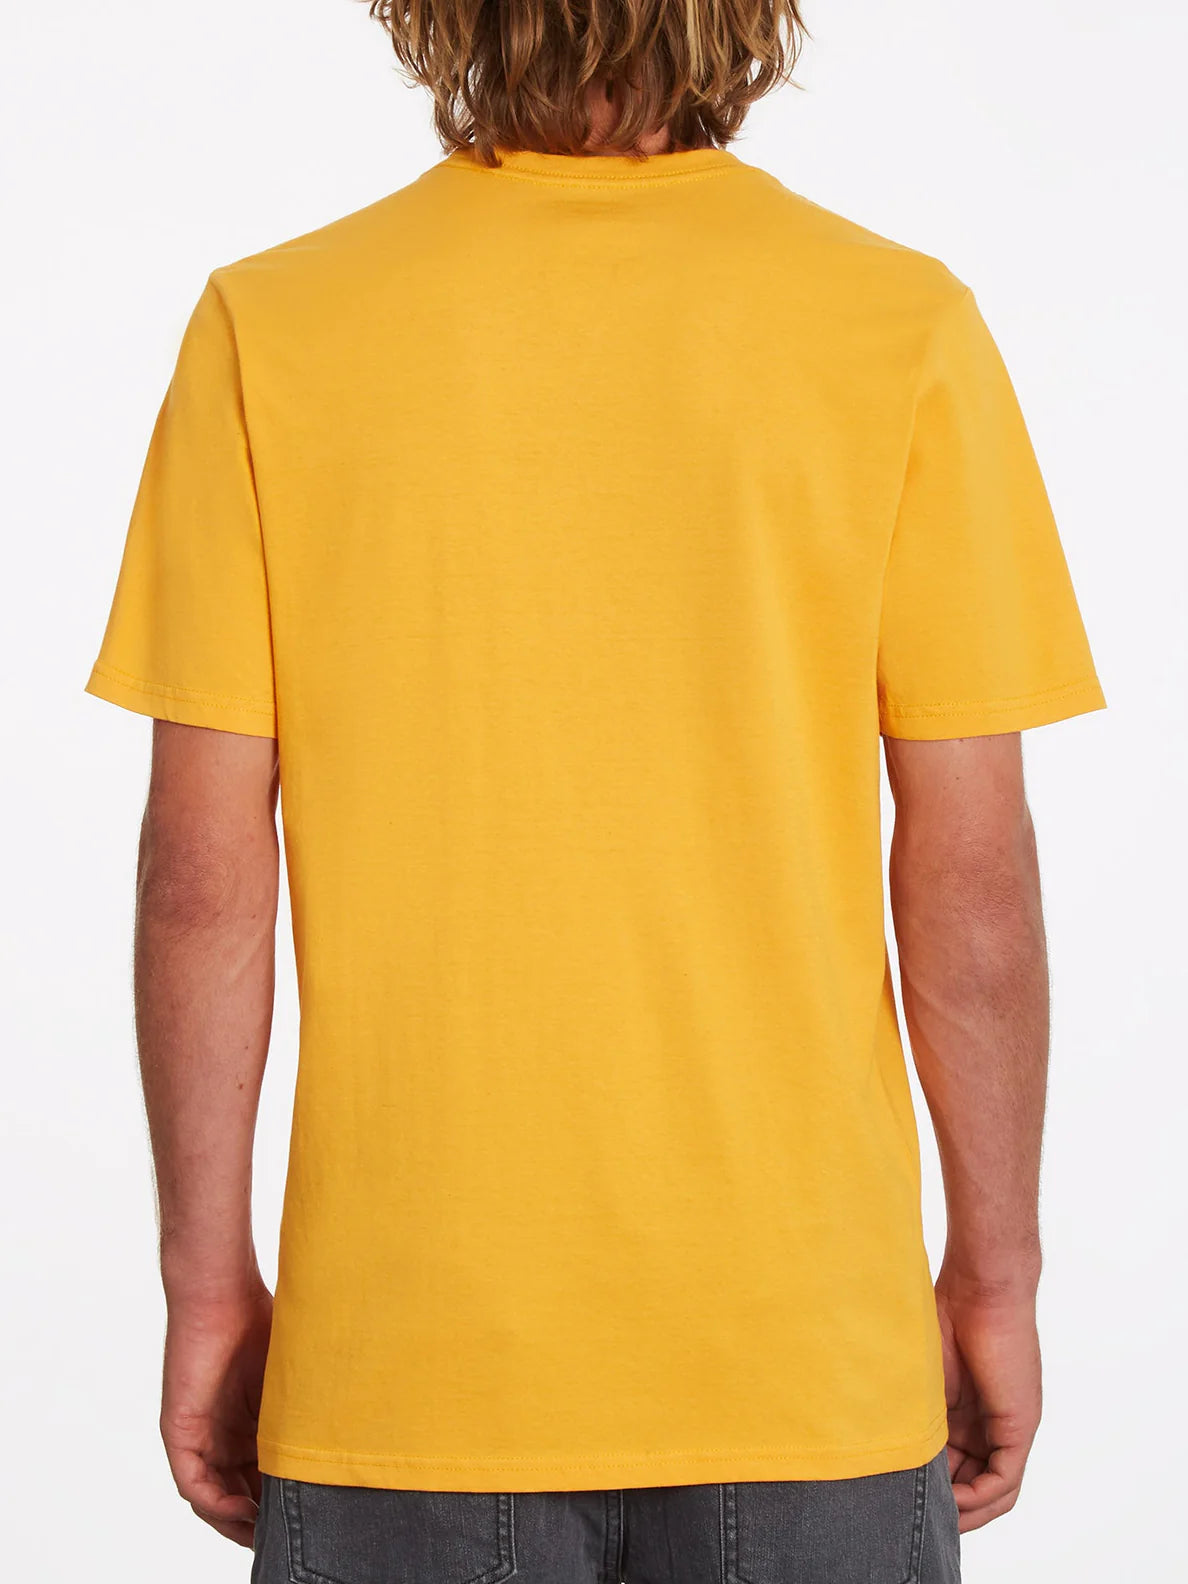 T-shirt Volcom Iconic Stone ss Sunburst | Nouveaux produits | Produits les plus récents | Produits les plus vendus | surfdevils.com